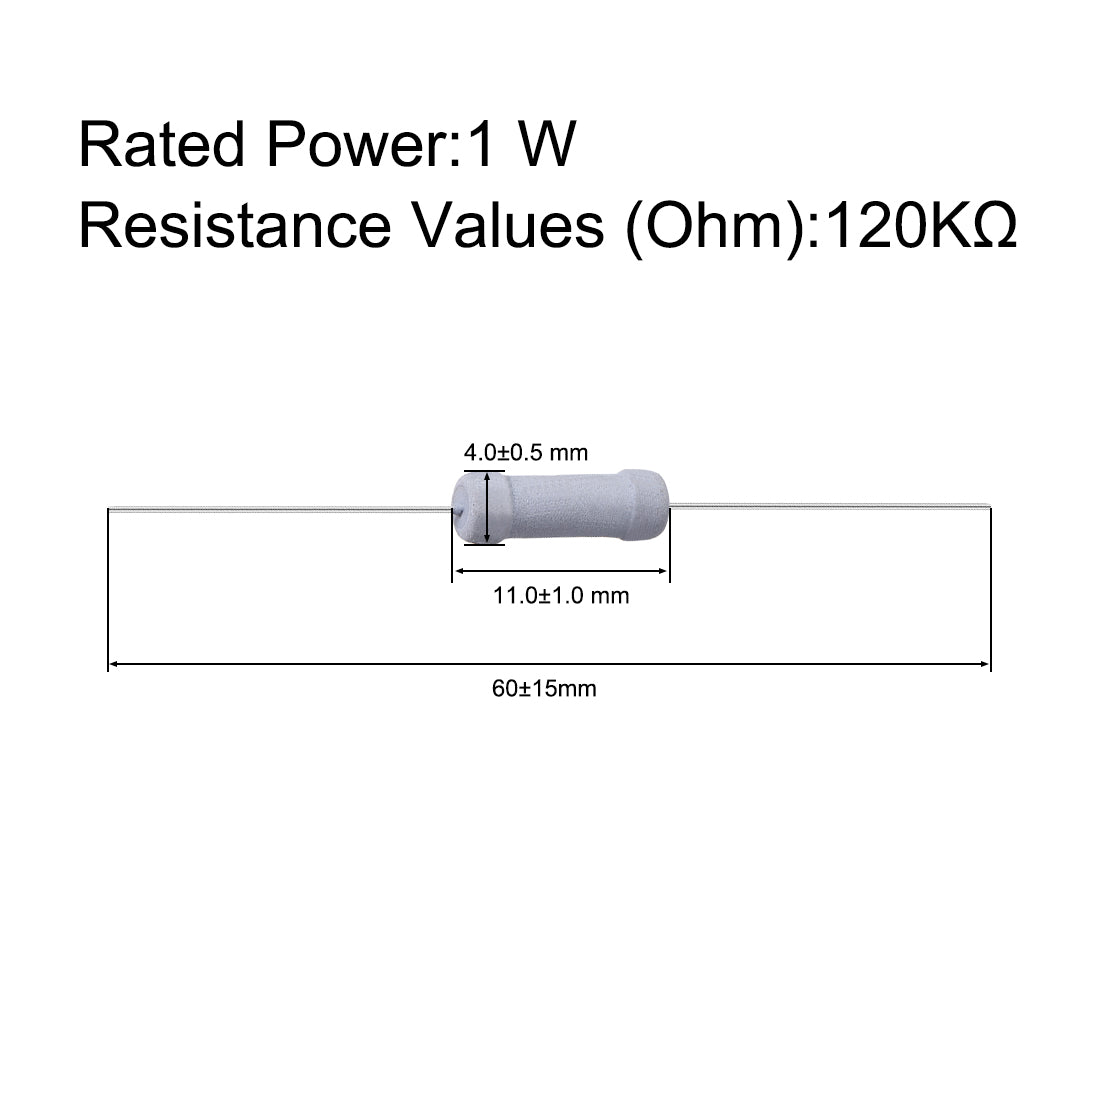 uxcell Uxcell 50 Pcs 1W 1 Watt Metal Oxide Film Resistor Axile Lead 120K Ohm ±5% Tolerance